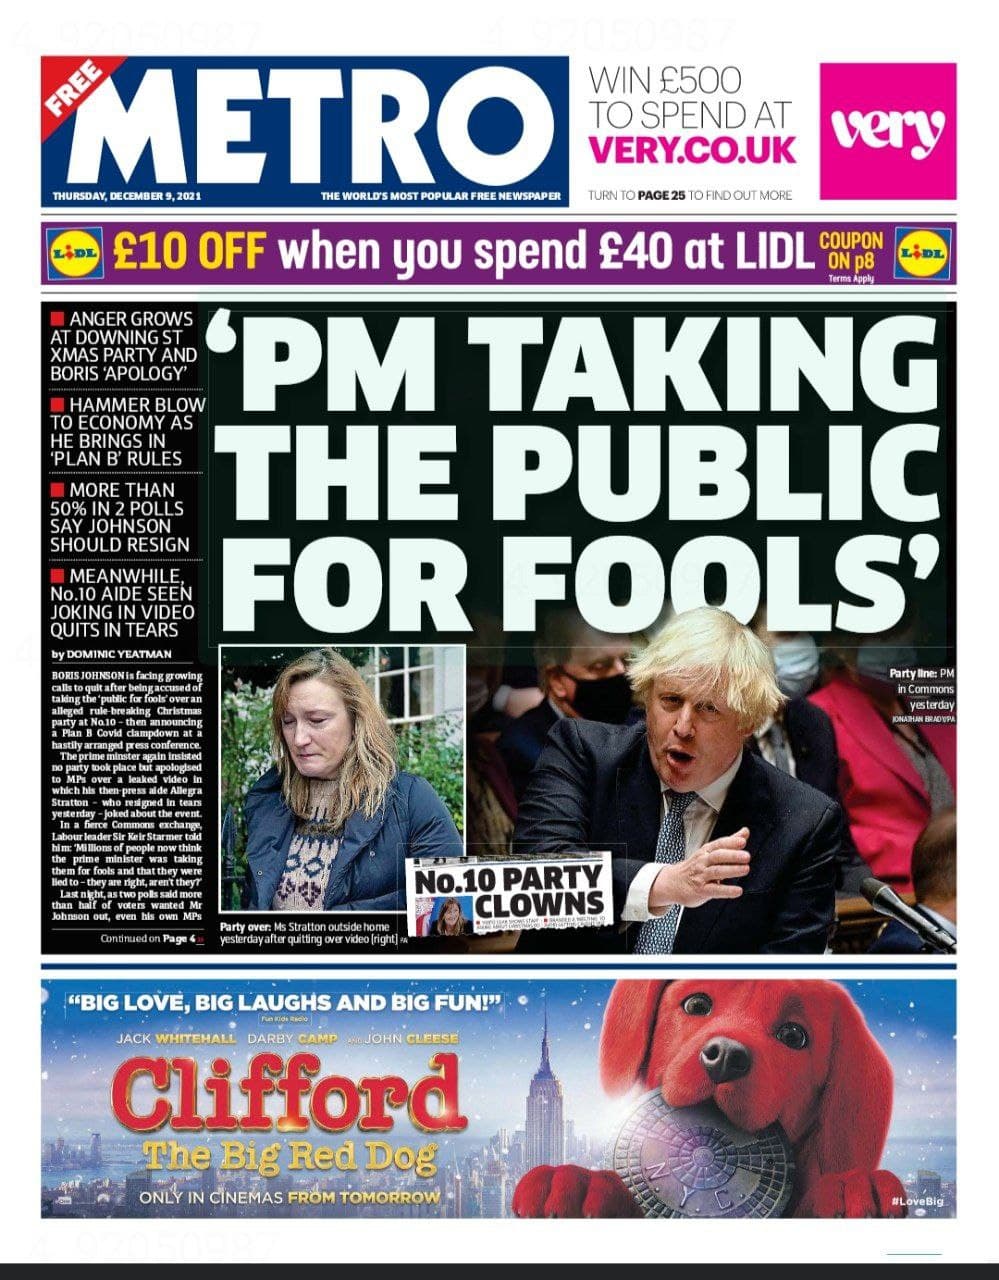 صفحه اول روزنامه مترو/ نخست وزیر [انگلستان] مردم را احمق فرض کرده است